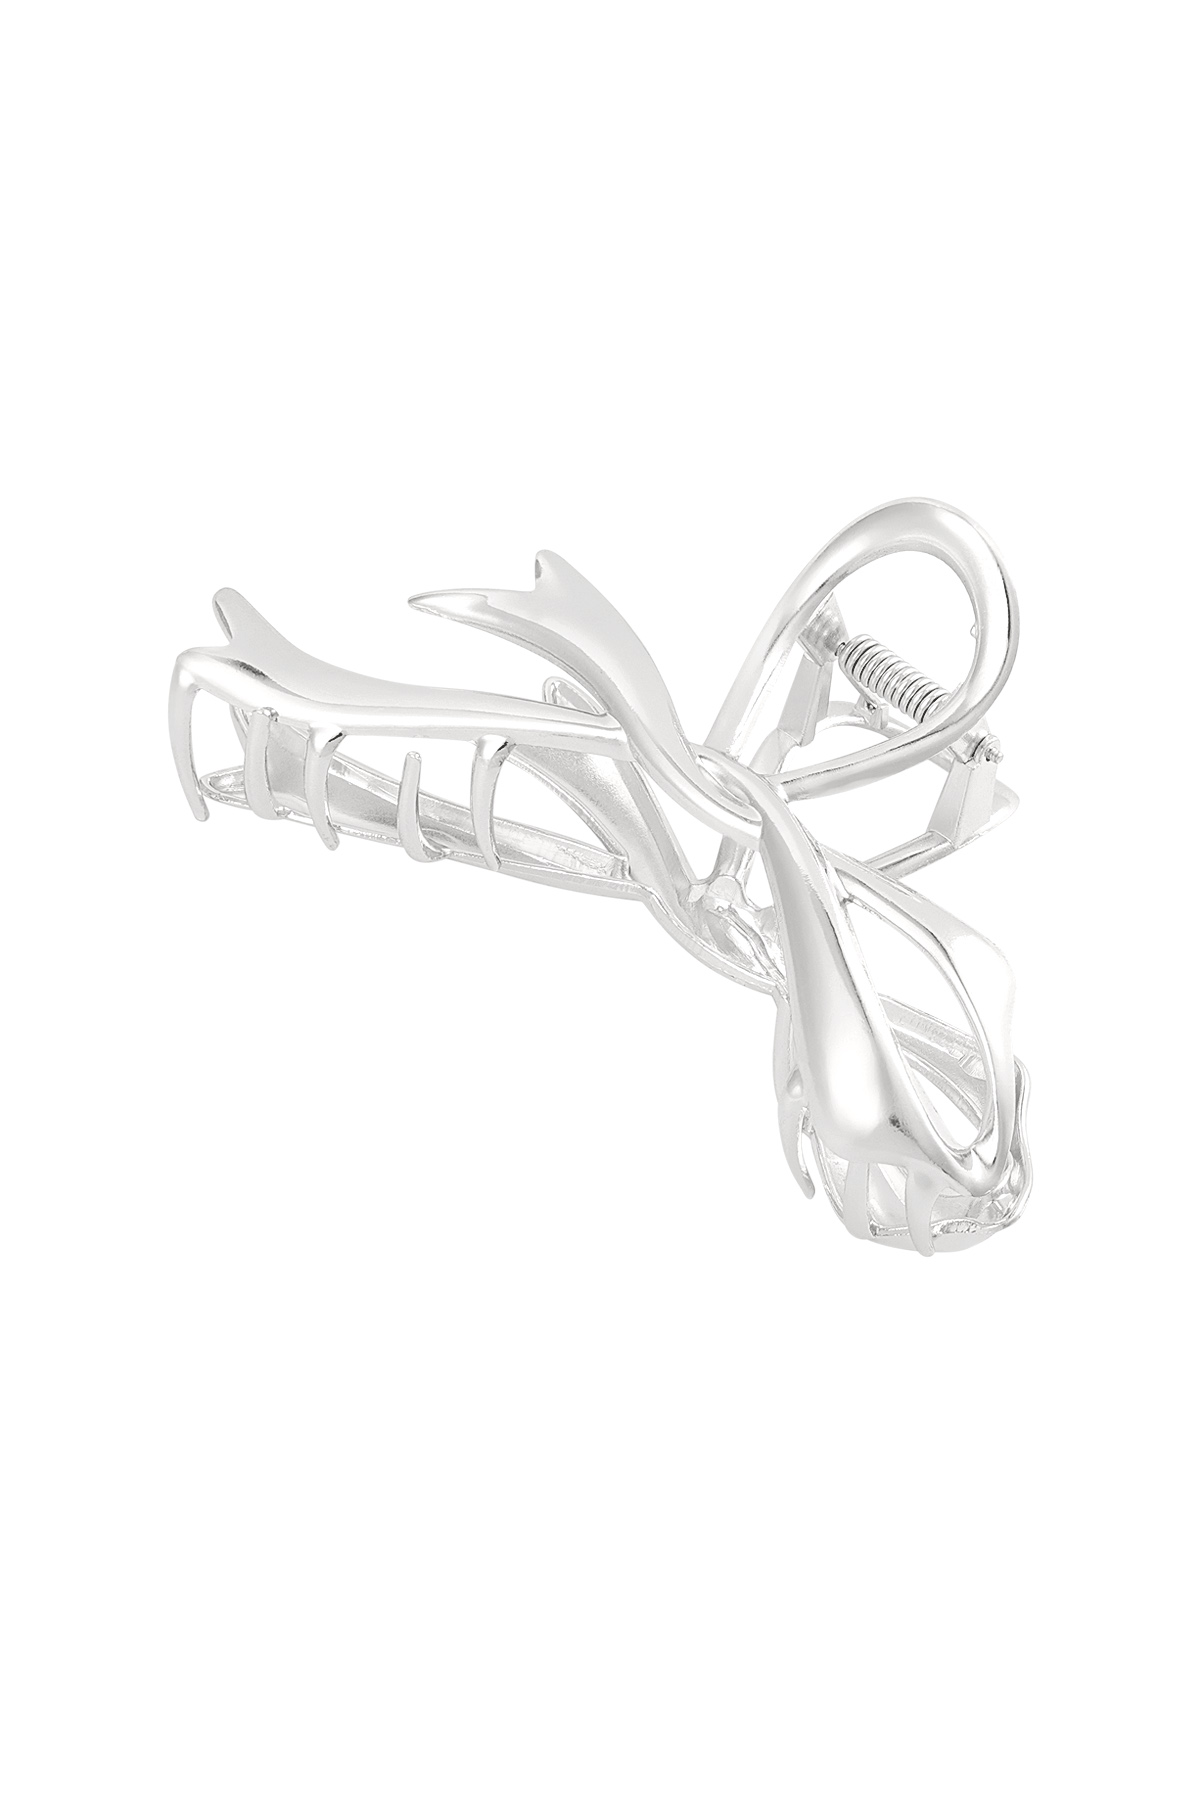 Bow hair clip silver h5 